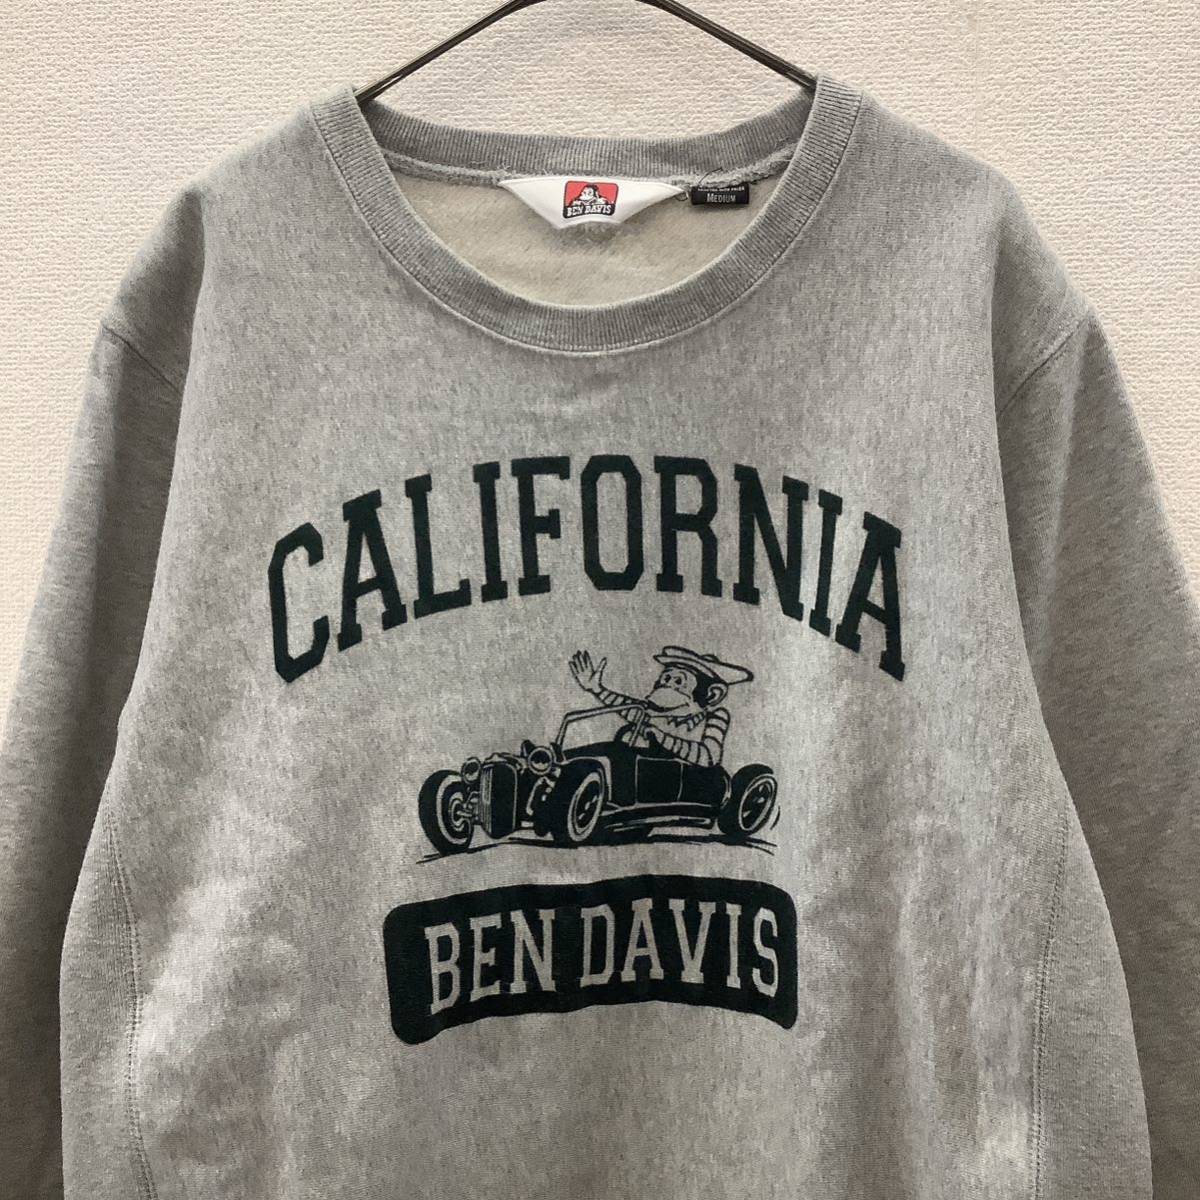 BEN DAVIS Ben tei винт колледж Logo тренировочный футболка серый обратная сторона ворсистый size M 78091